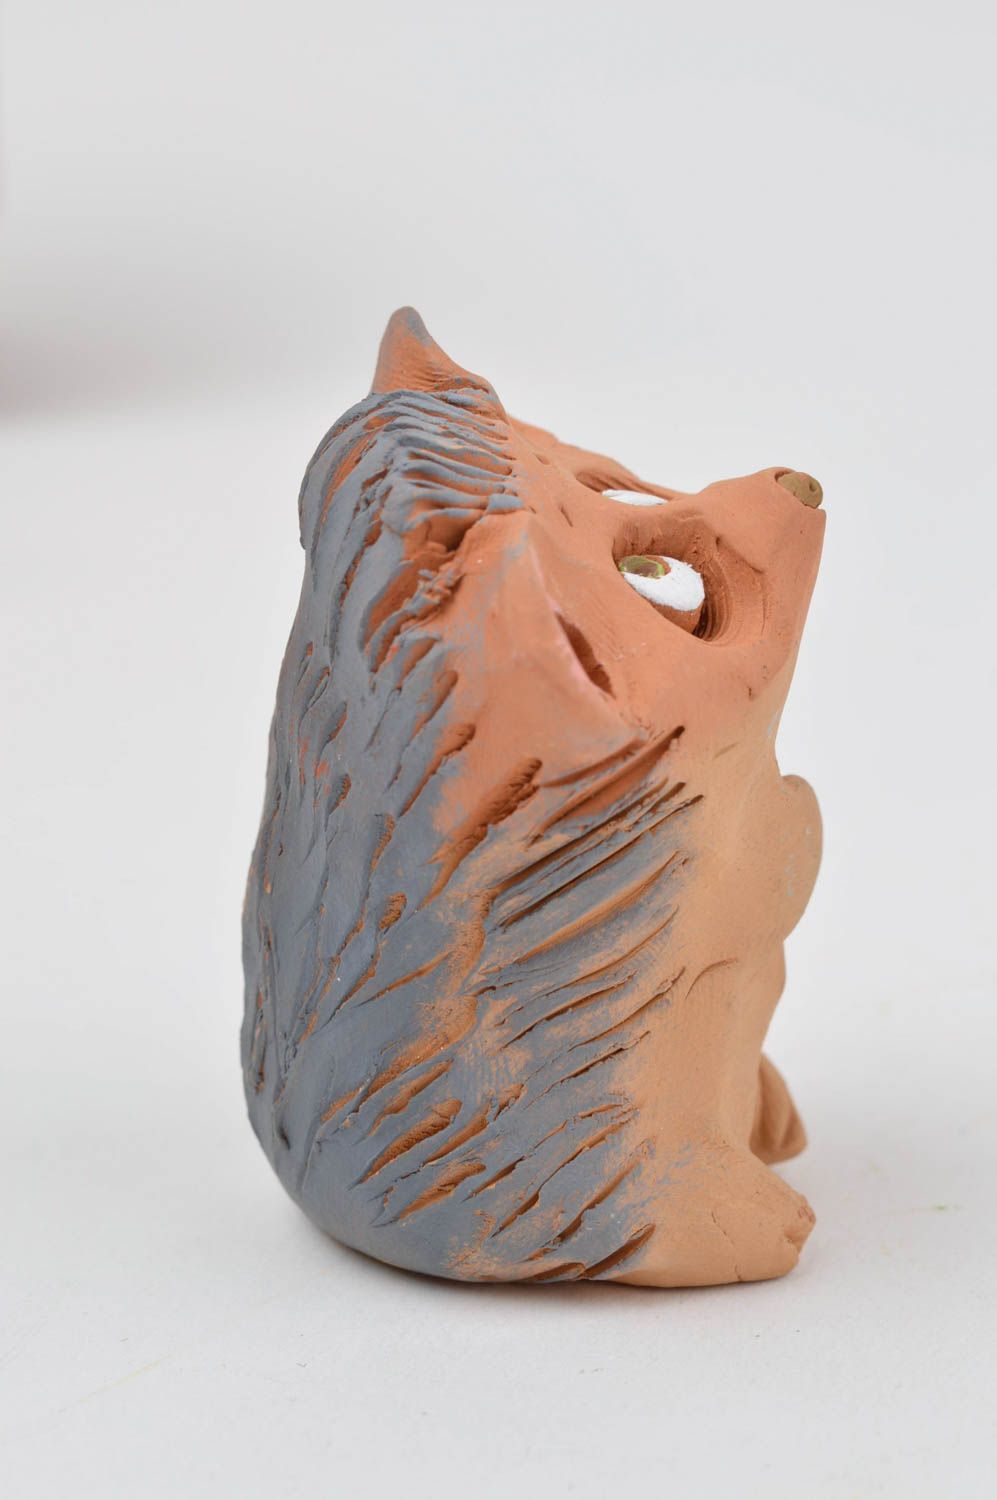 Статуэтка для декора ручной работы ежик статуэтка животного фигурка из глины фото 3